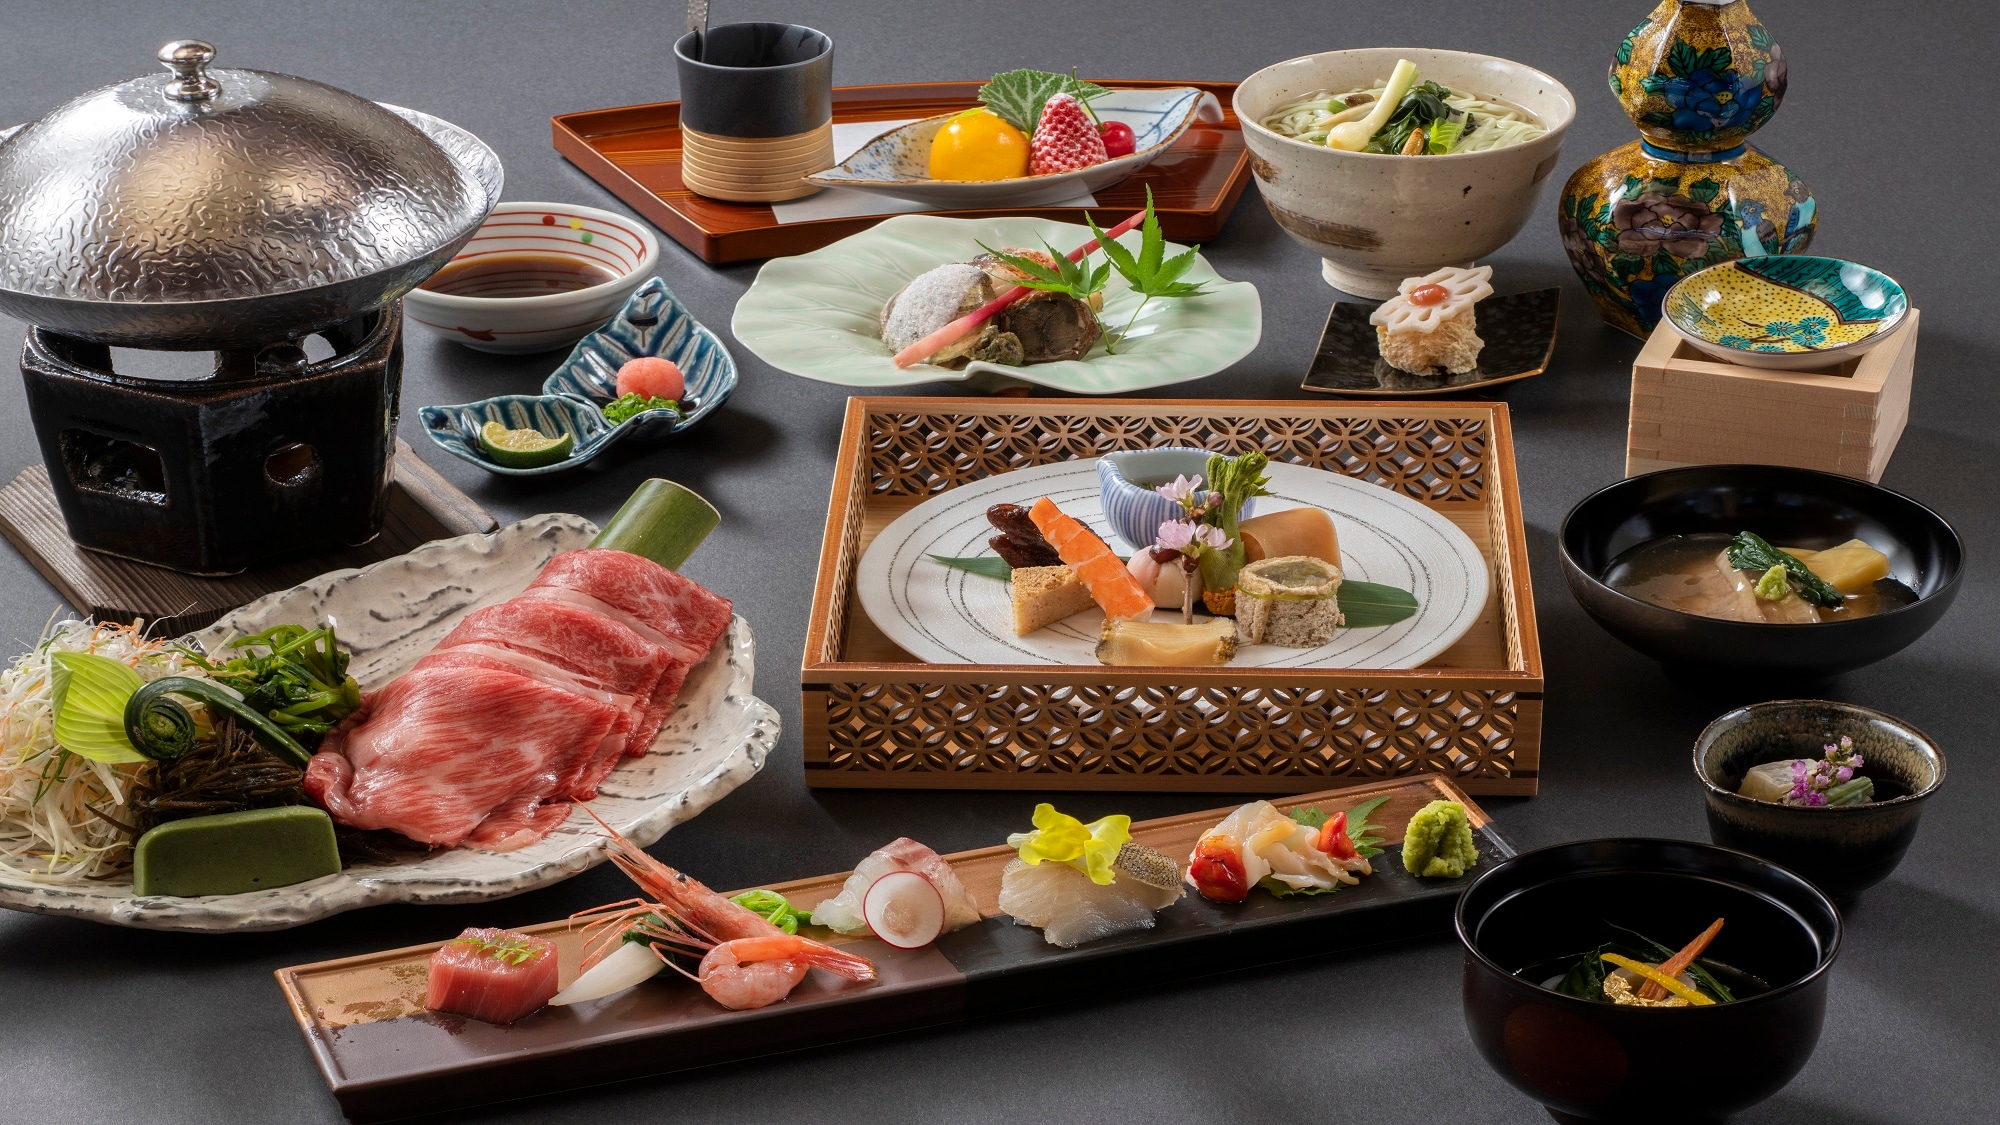 【저녁식사 이미지】노토의 사토야마 사토우미에서 잡힌 제철 채소를 섞은 화회석을 즐겨 주세요.